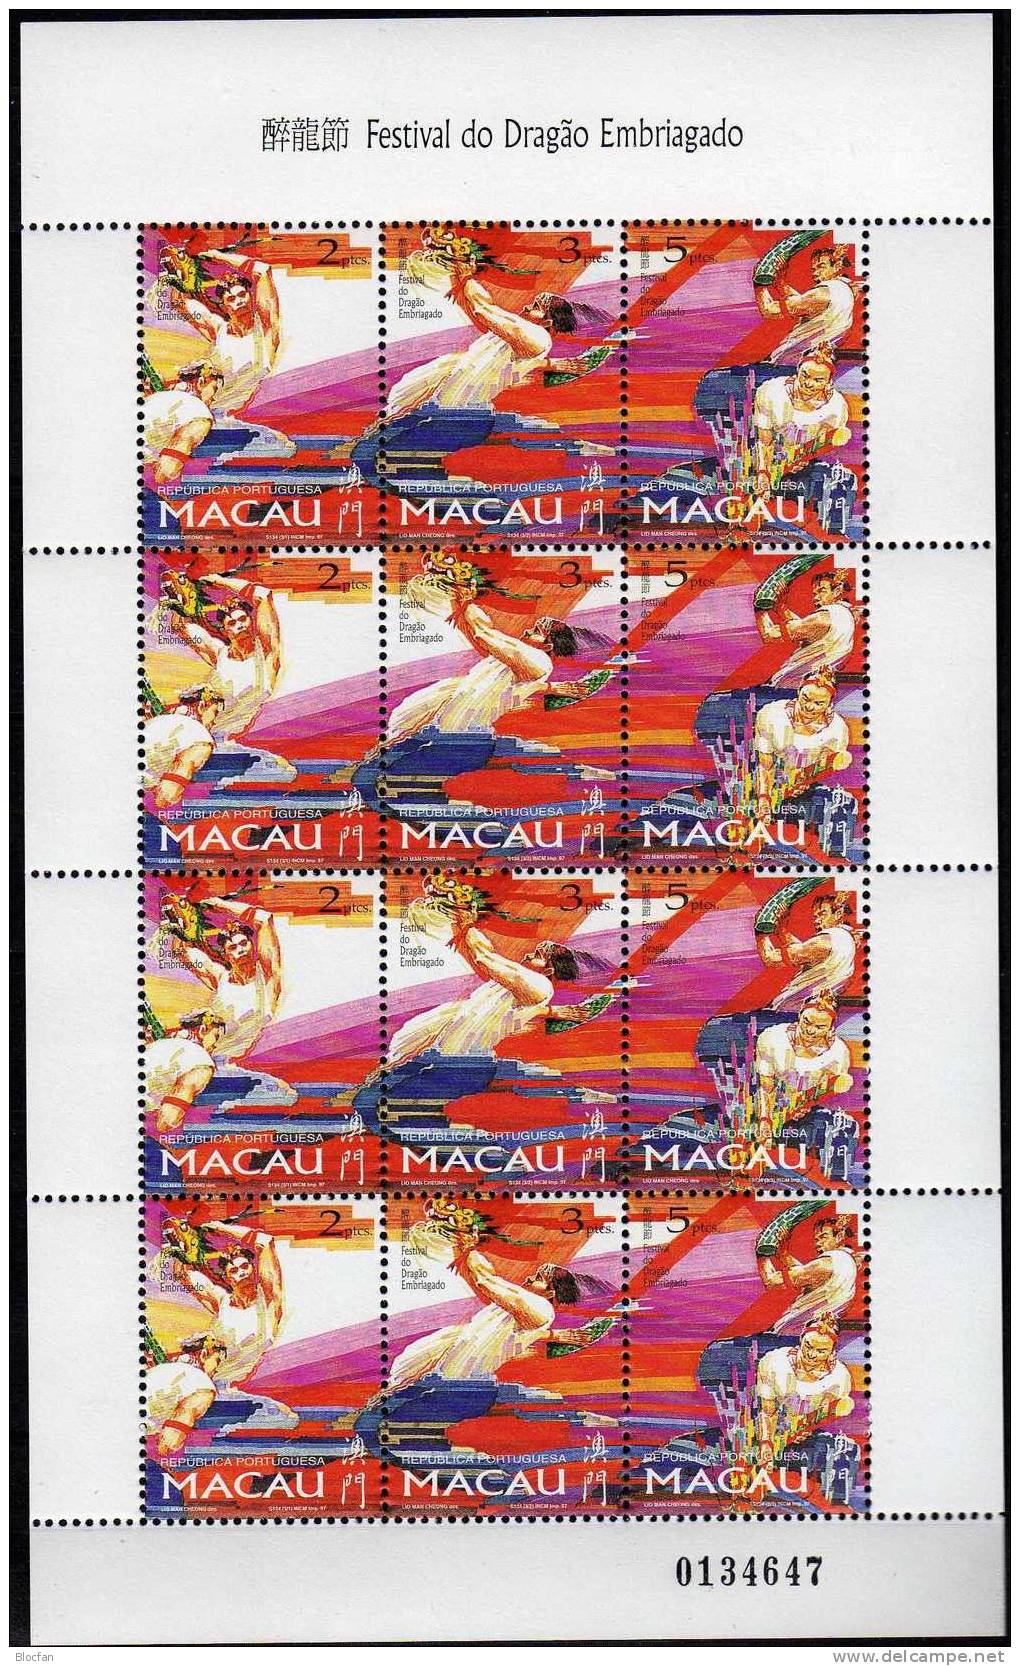 Drachenfest 1997 Macao 913/15 Im Kleinbogen ** 36€ Drachenfest Mit Tänzer Und Bändern Fahnen Feuerwerk Sheetlet Of MACAU - Blocs-feuillets